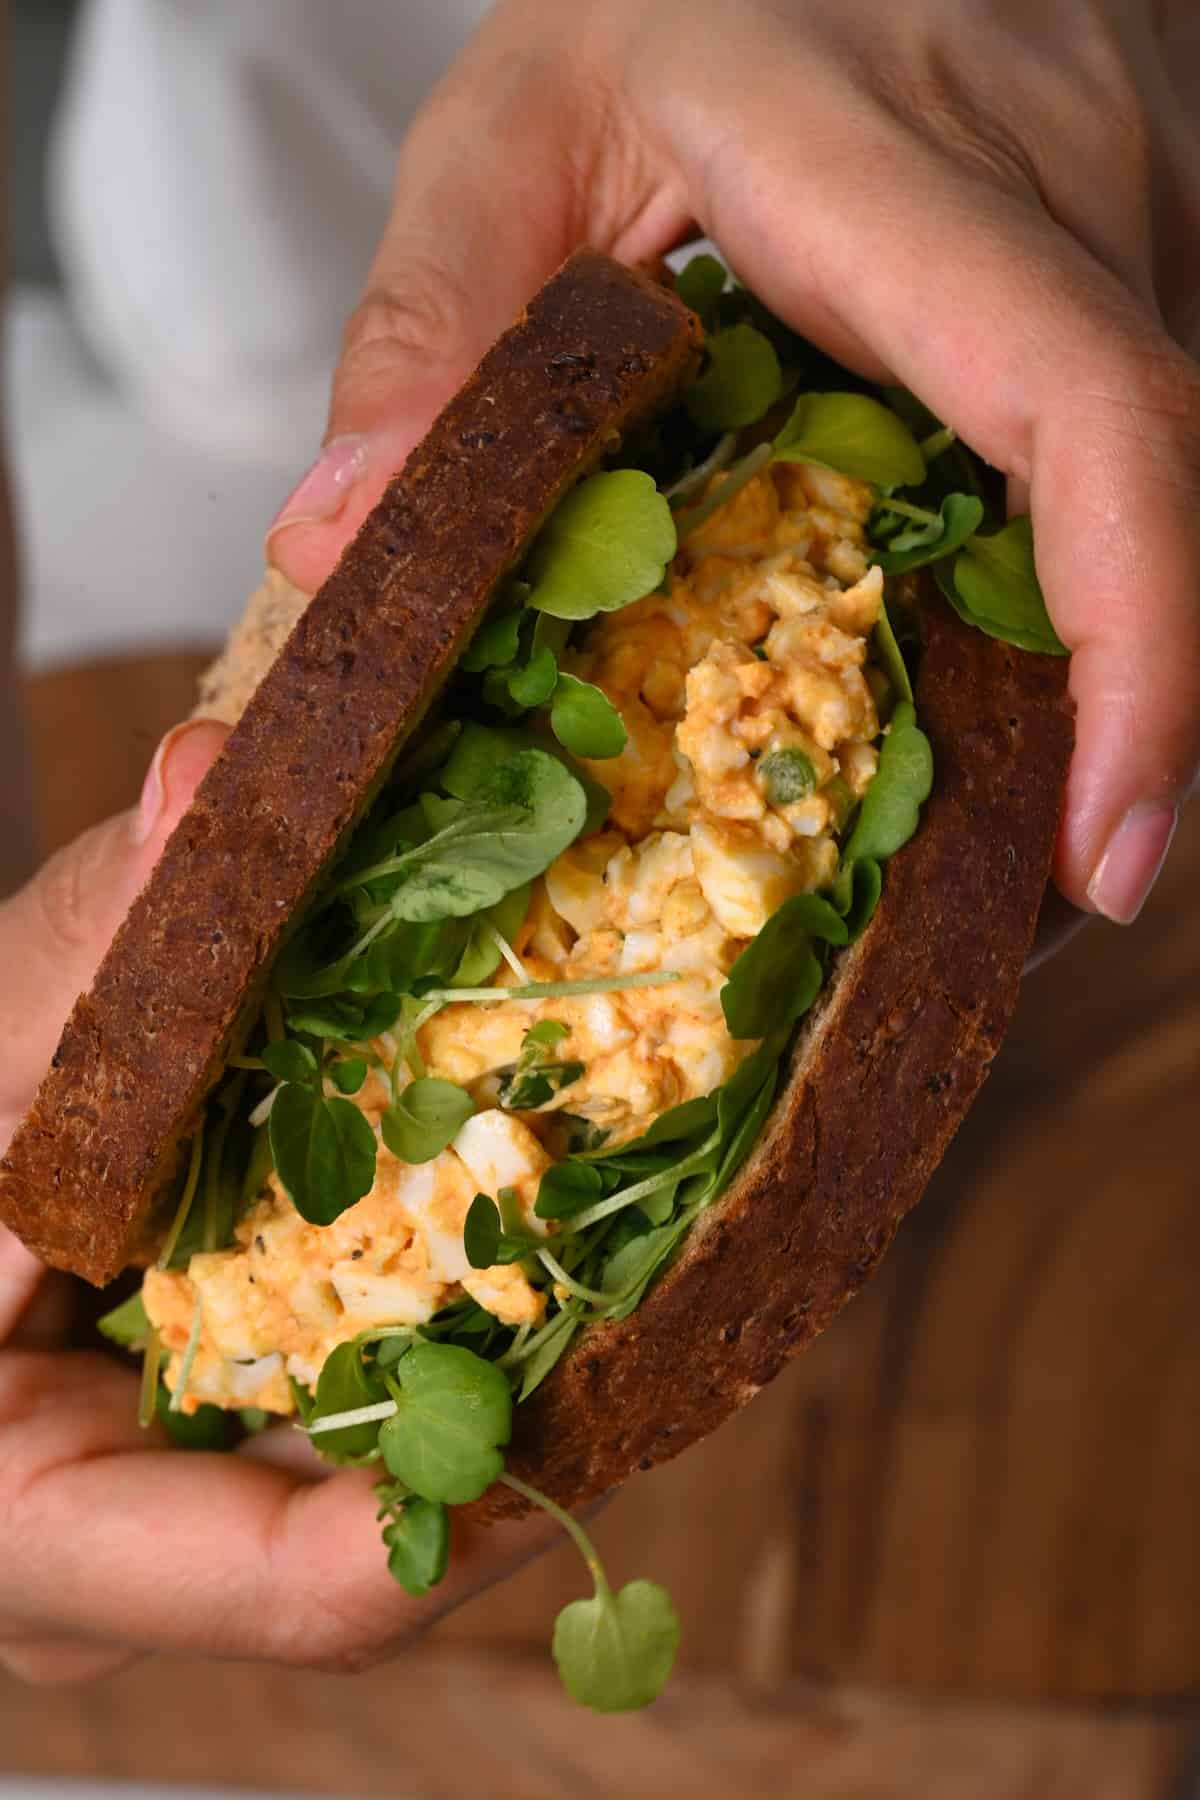 Holding an egg salad sandwich